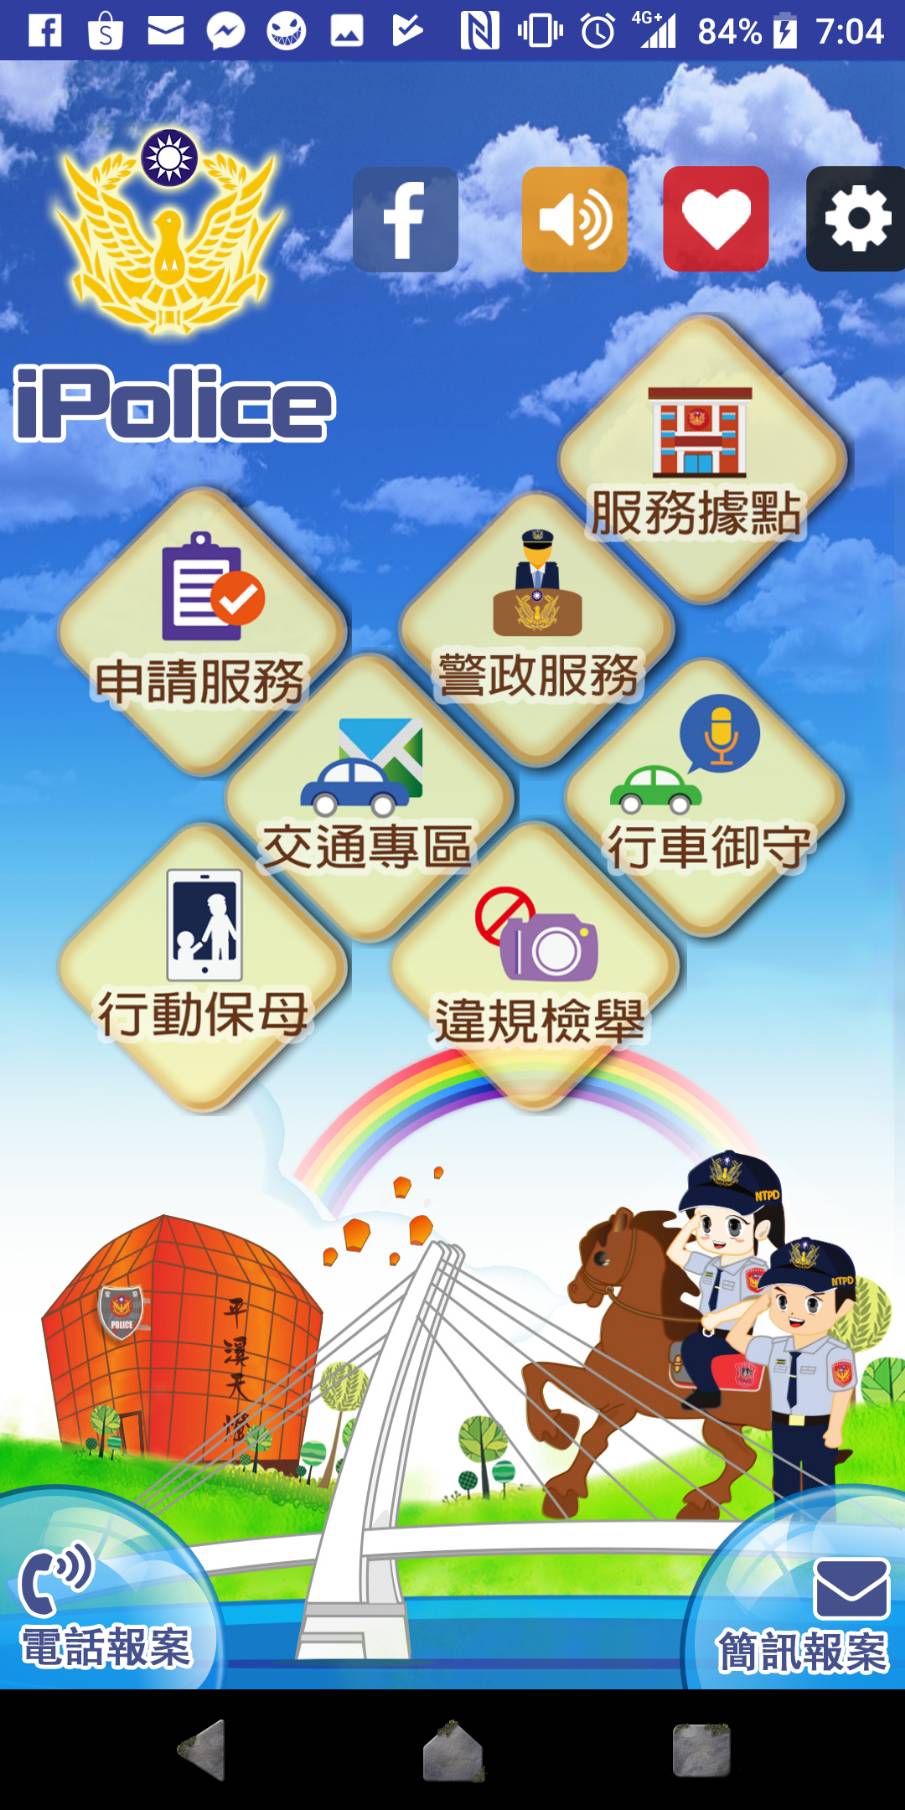 趕快下載iPolice 新北市政府警察局便民服務app吧!